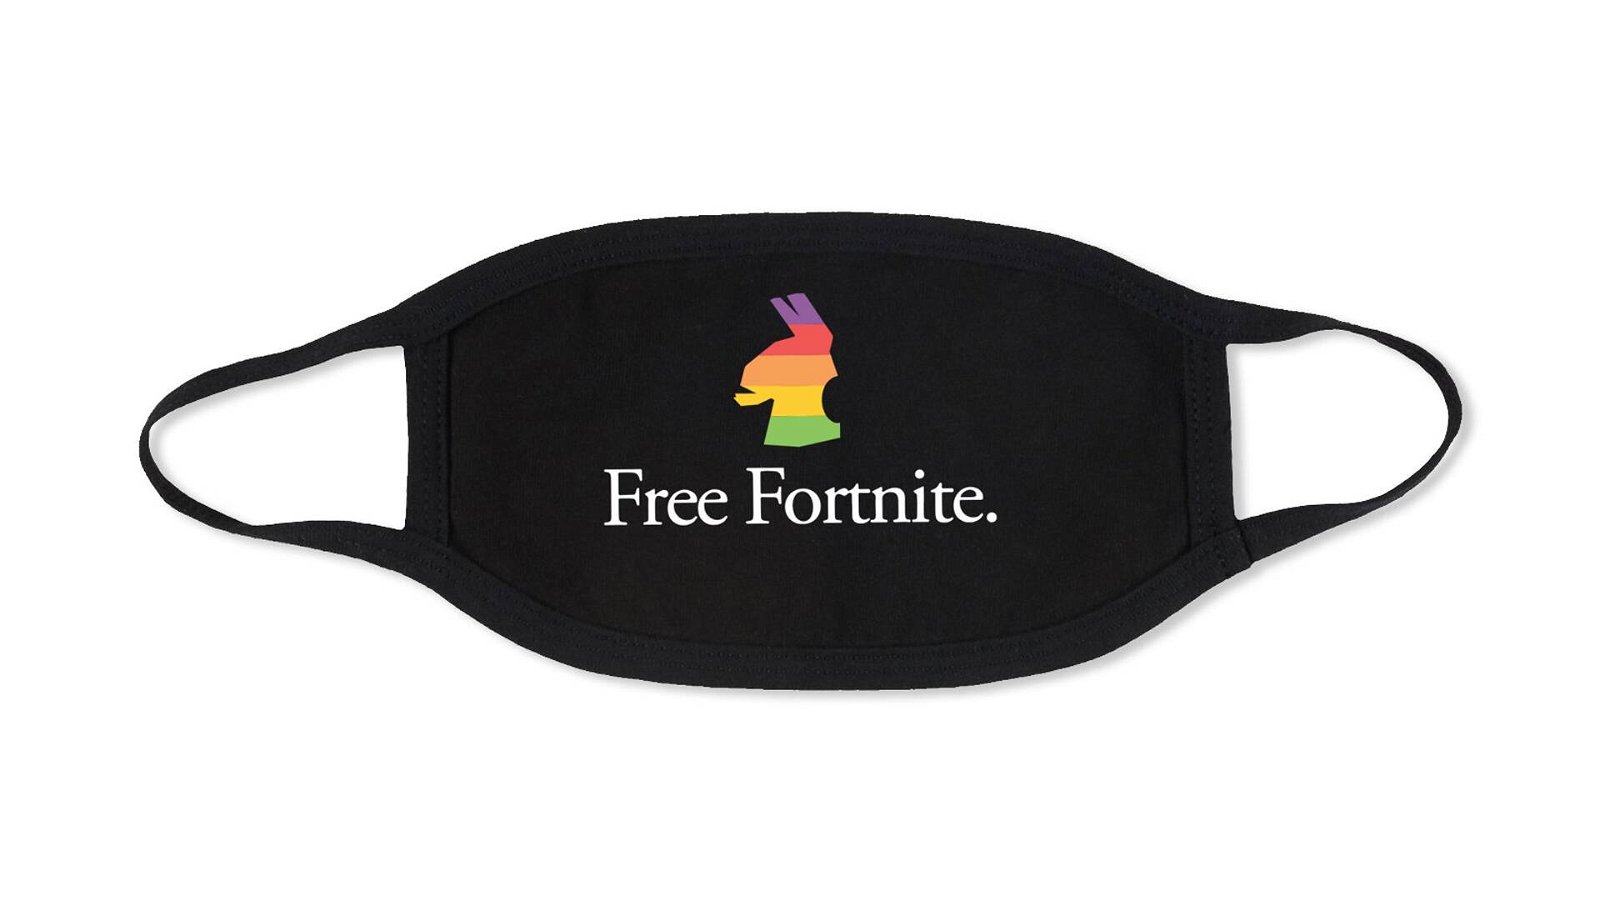 Immagine di Fortnite vs Apple: disponibili i primi vestiti Free Fortnite